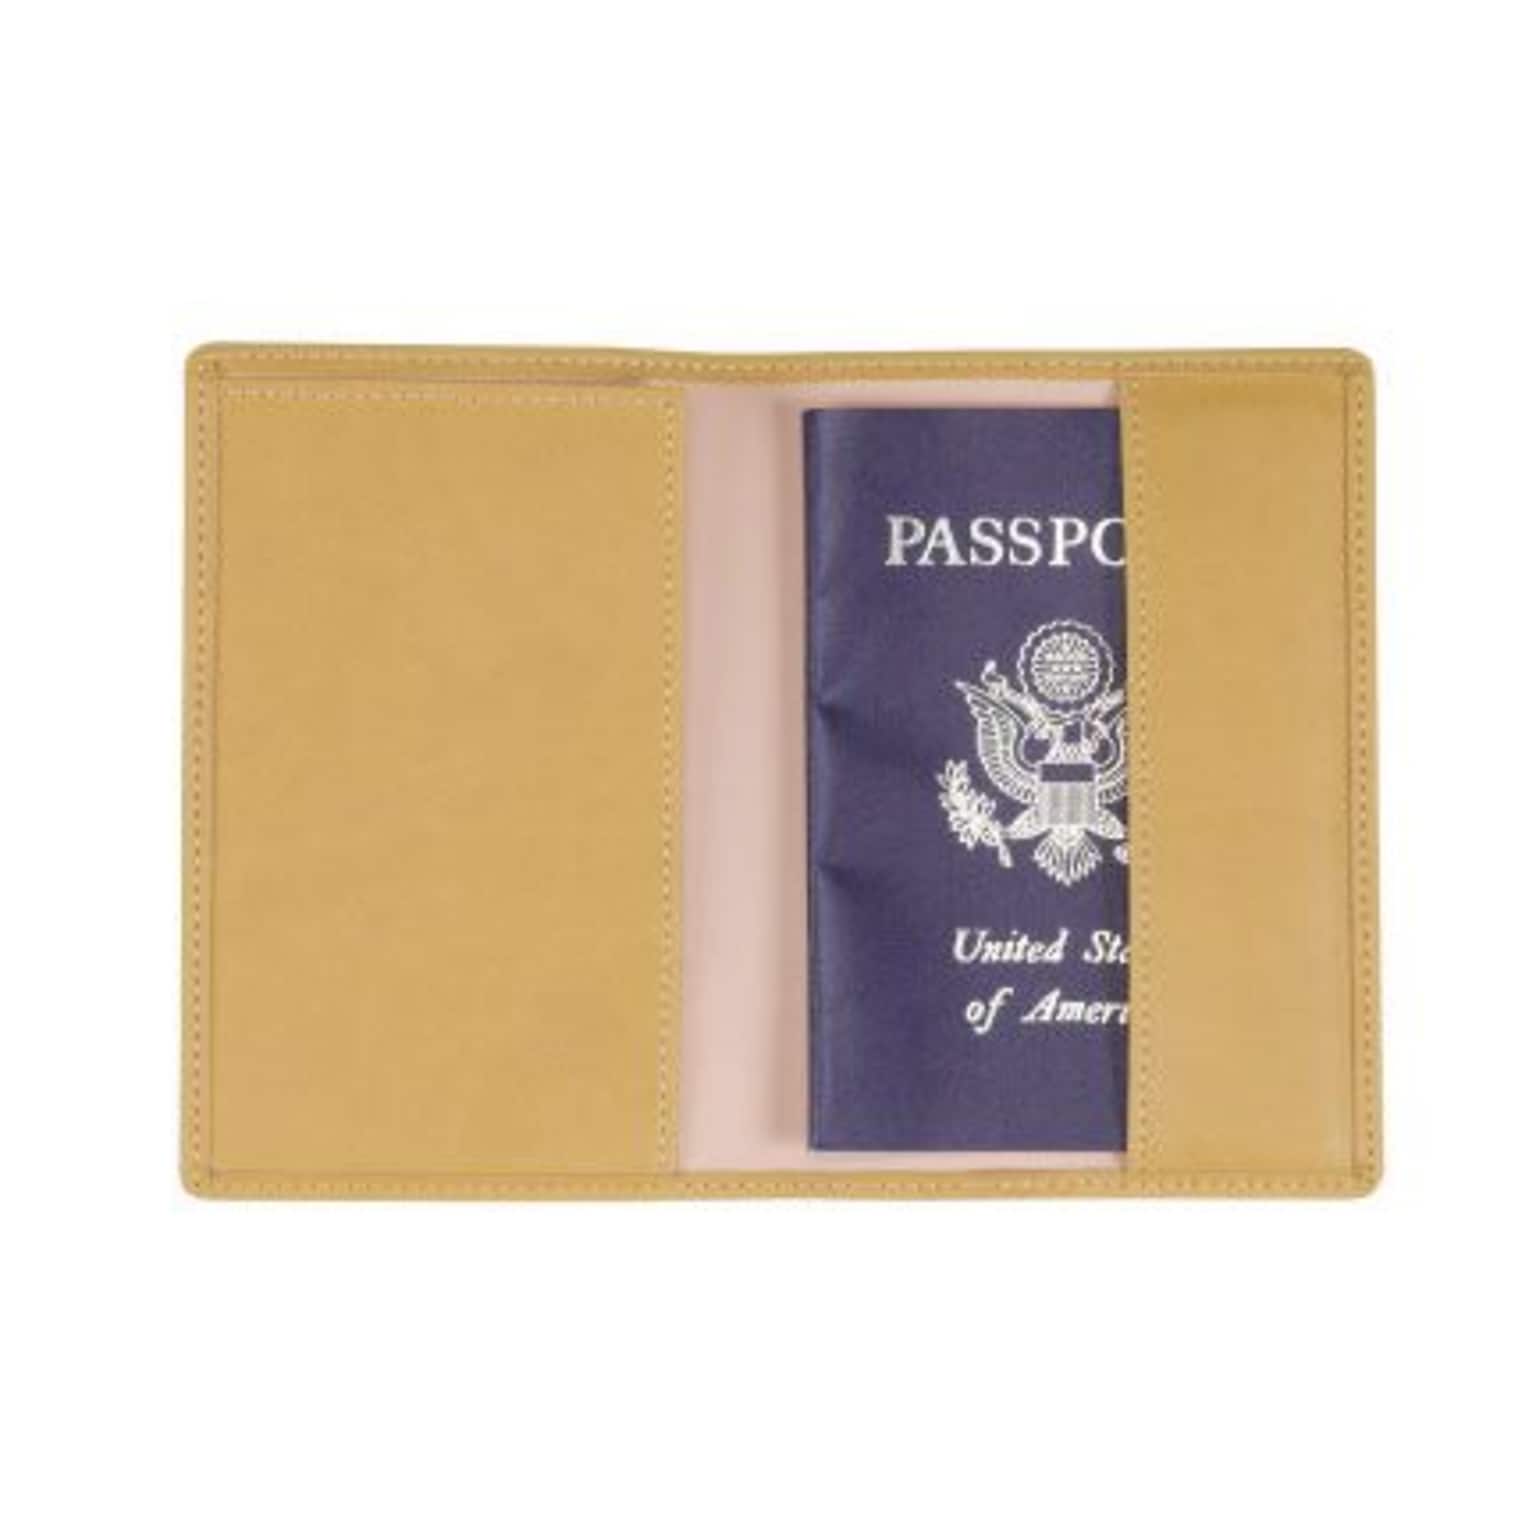 Royce Leather Plain Passport Jacket, Mustard